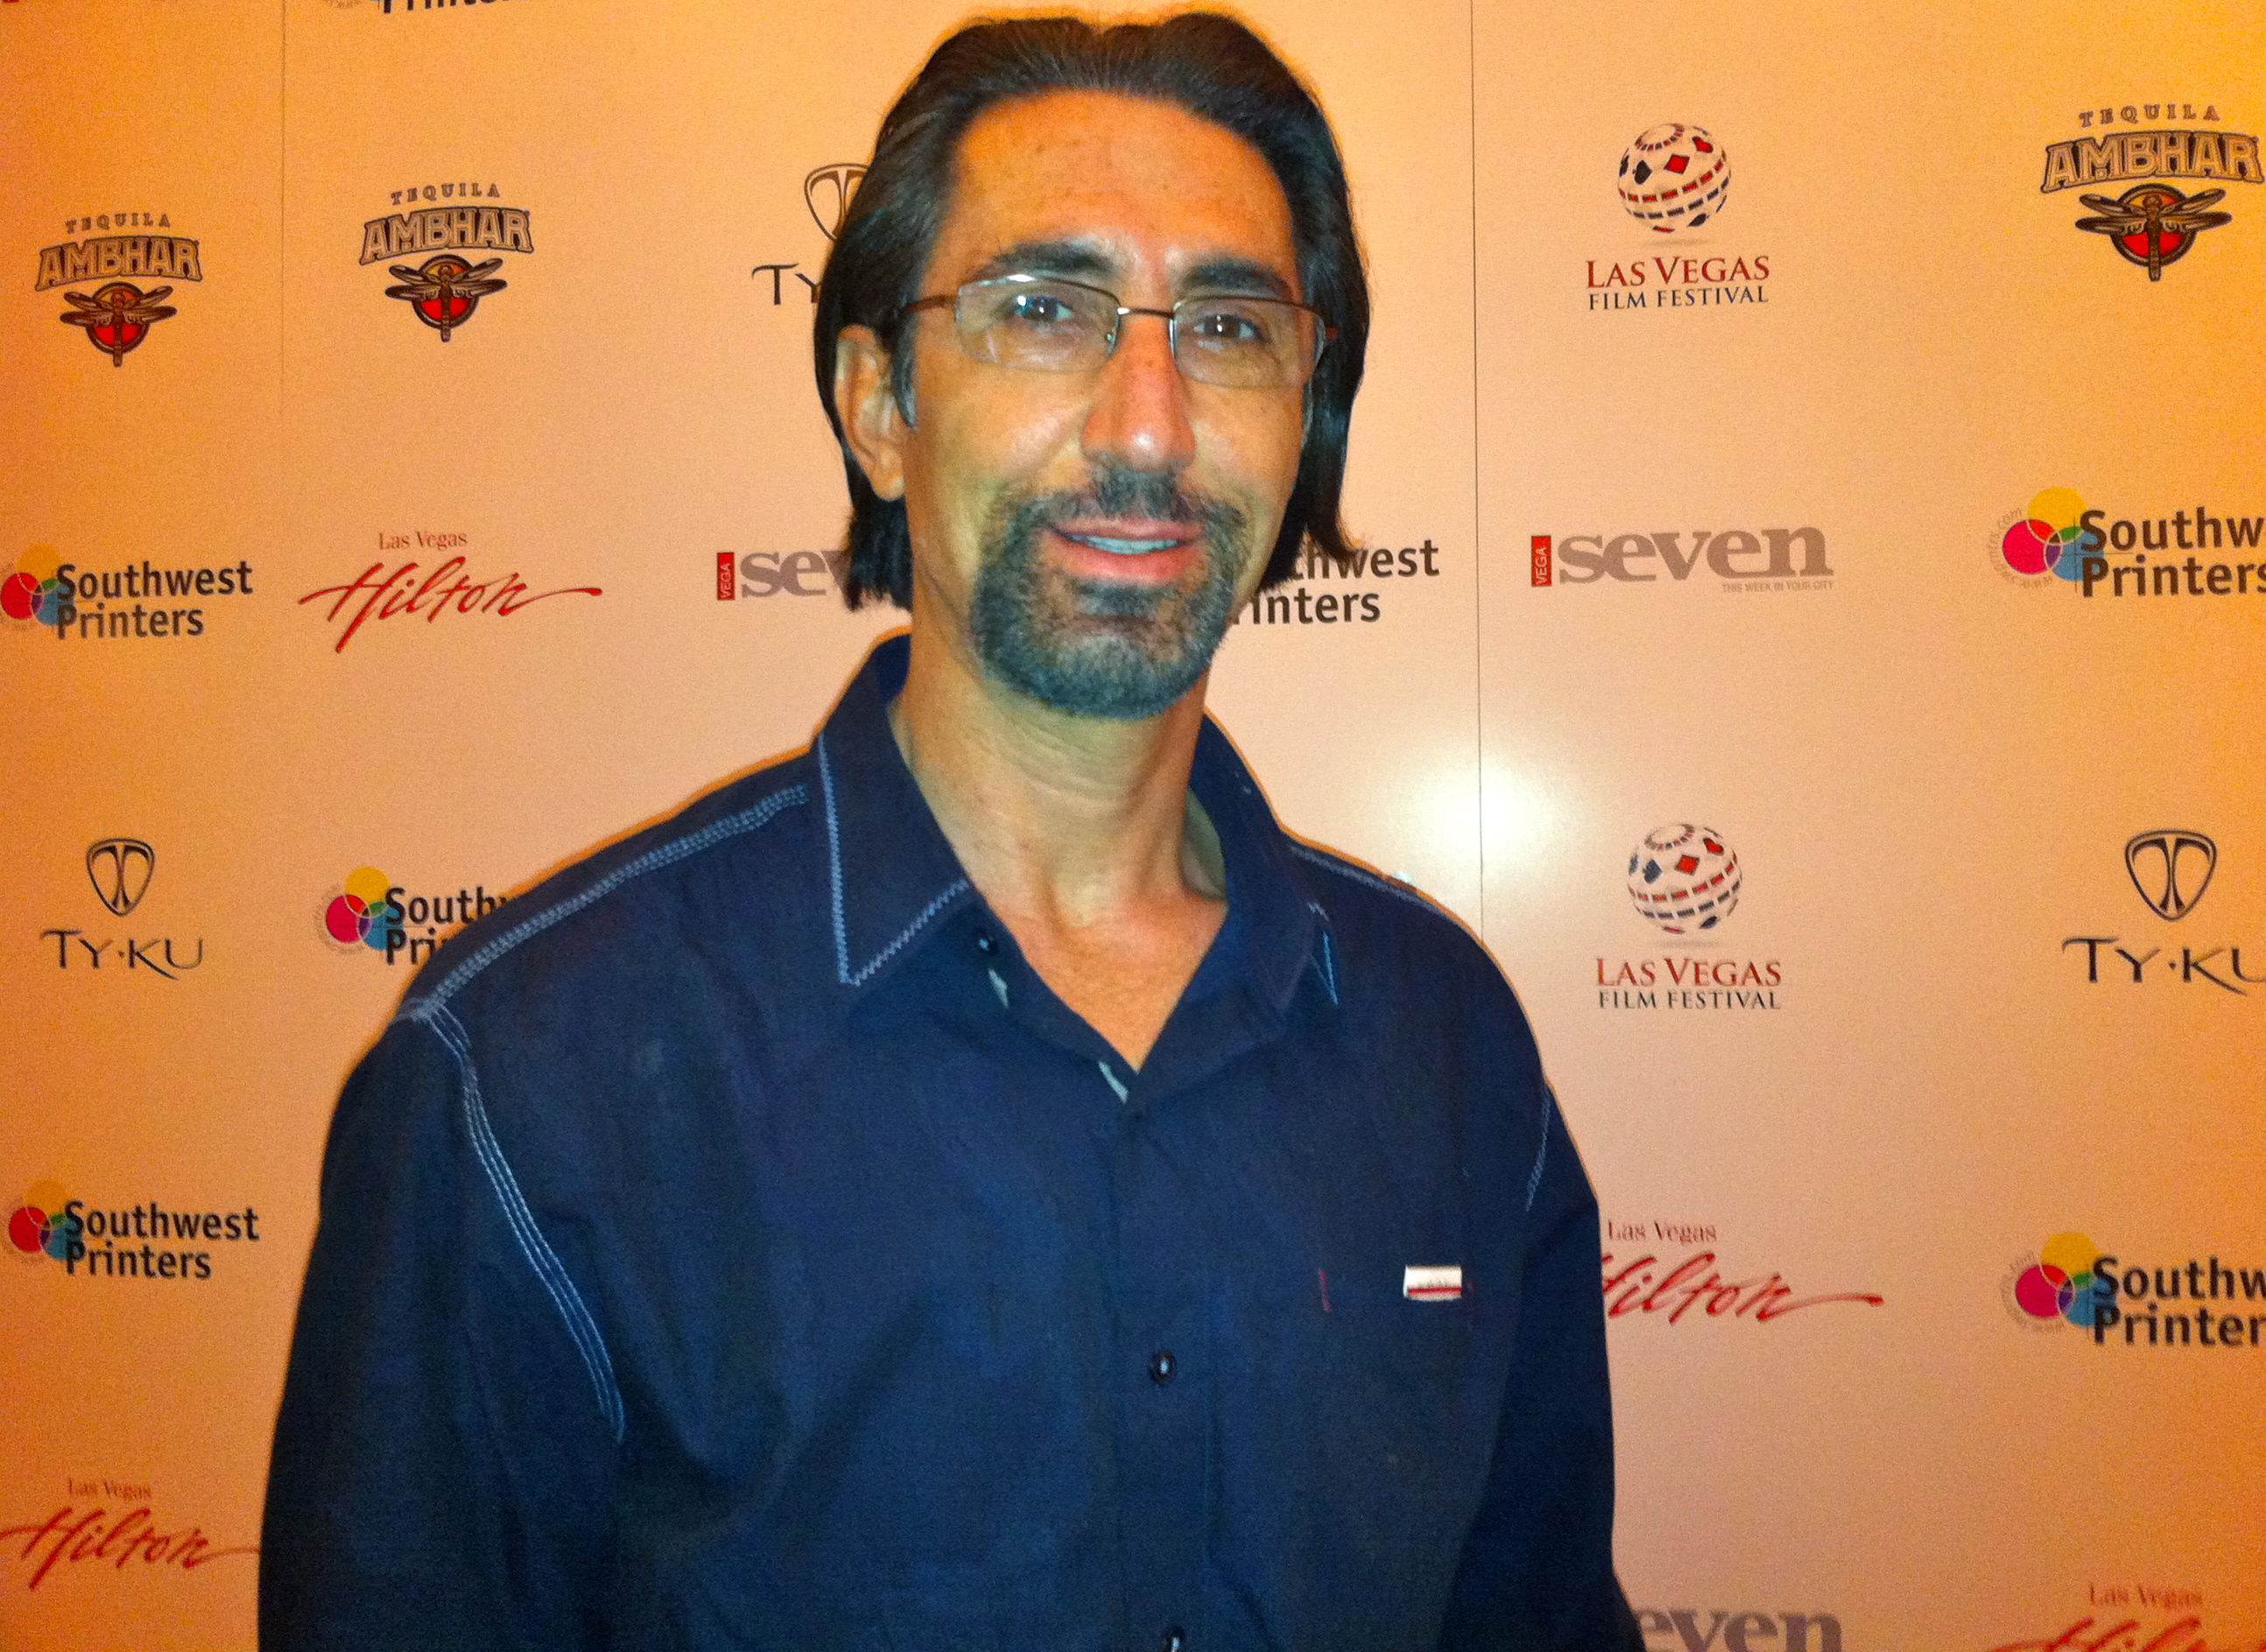 Jordi Caballero at the Las Vegas film festival